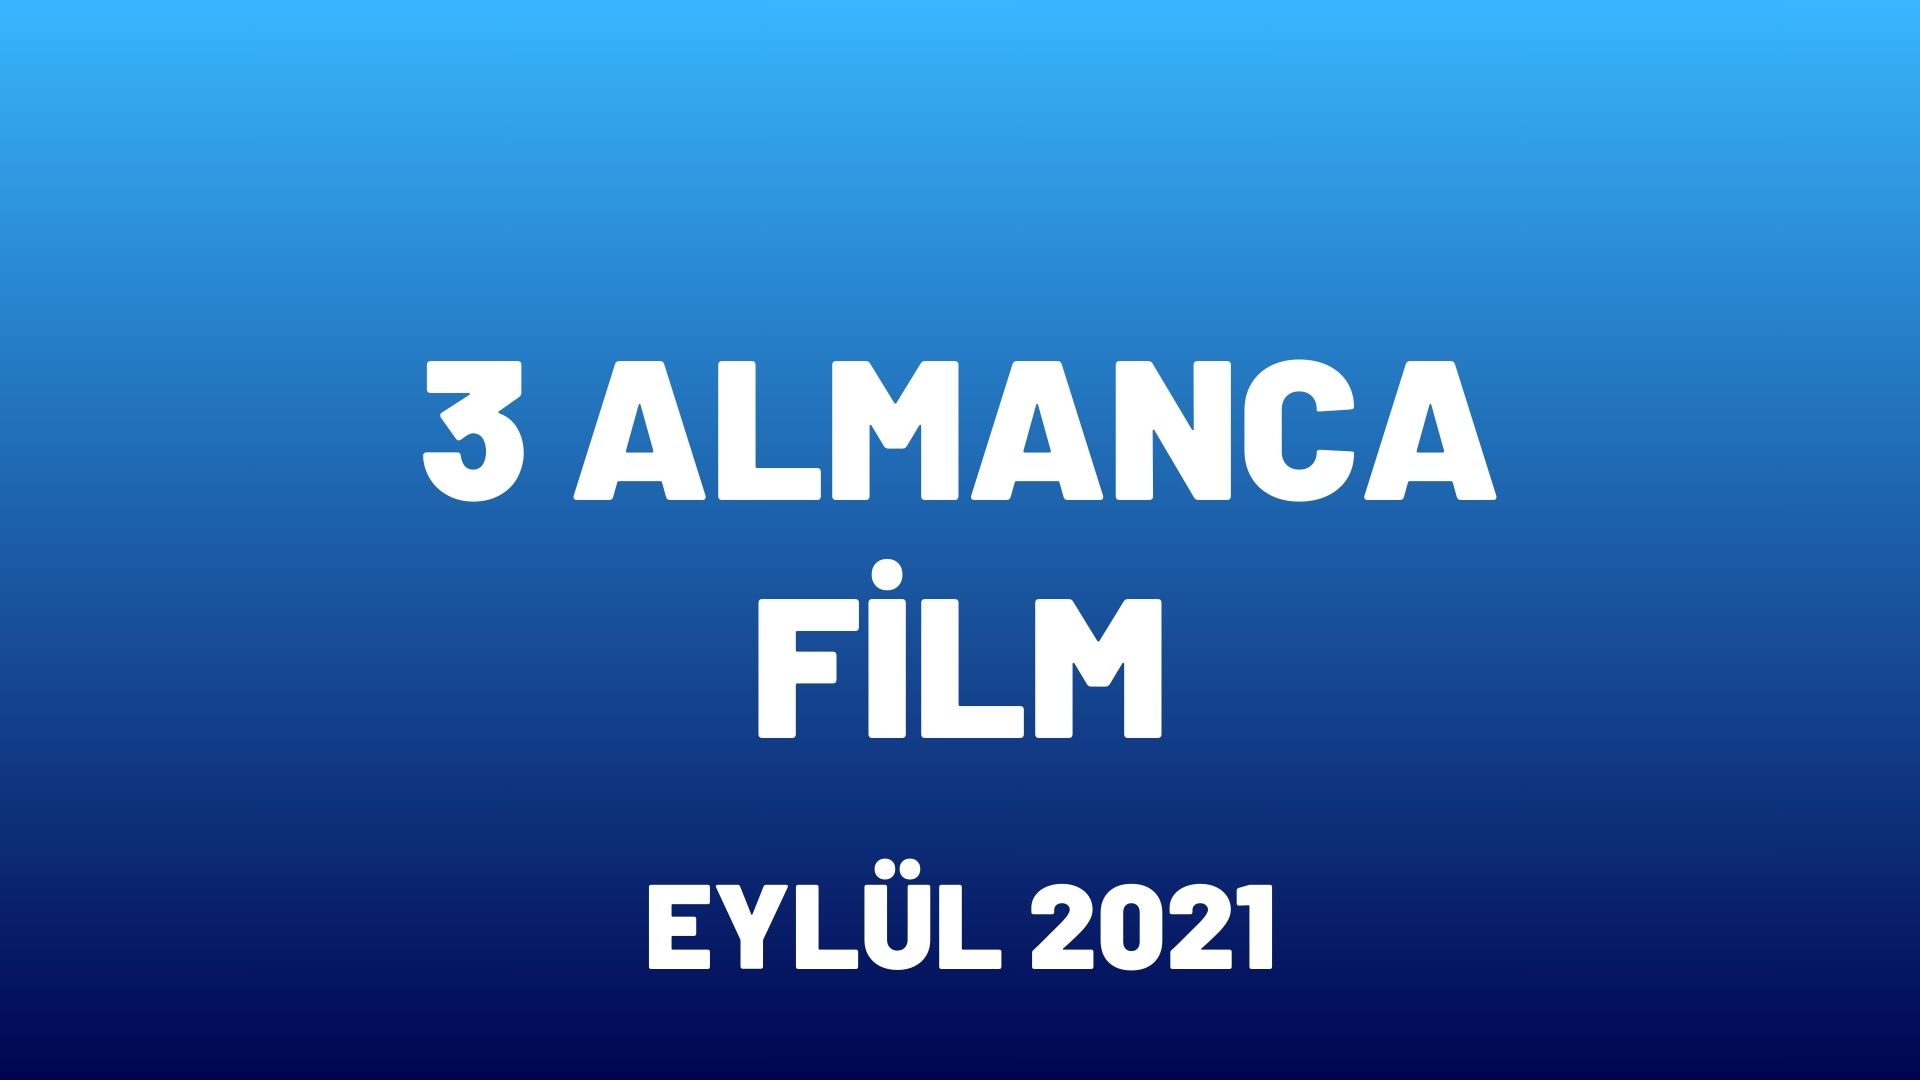 Almanca Film Önerileri Eylül 2021